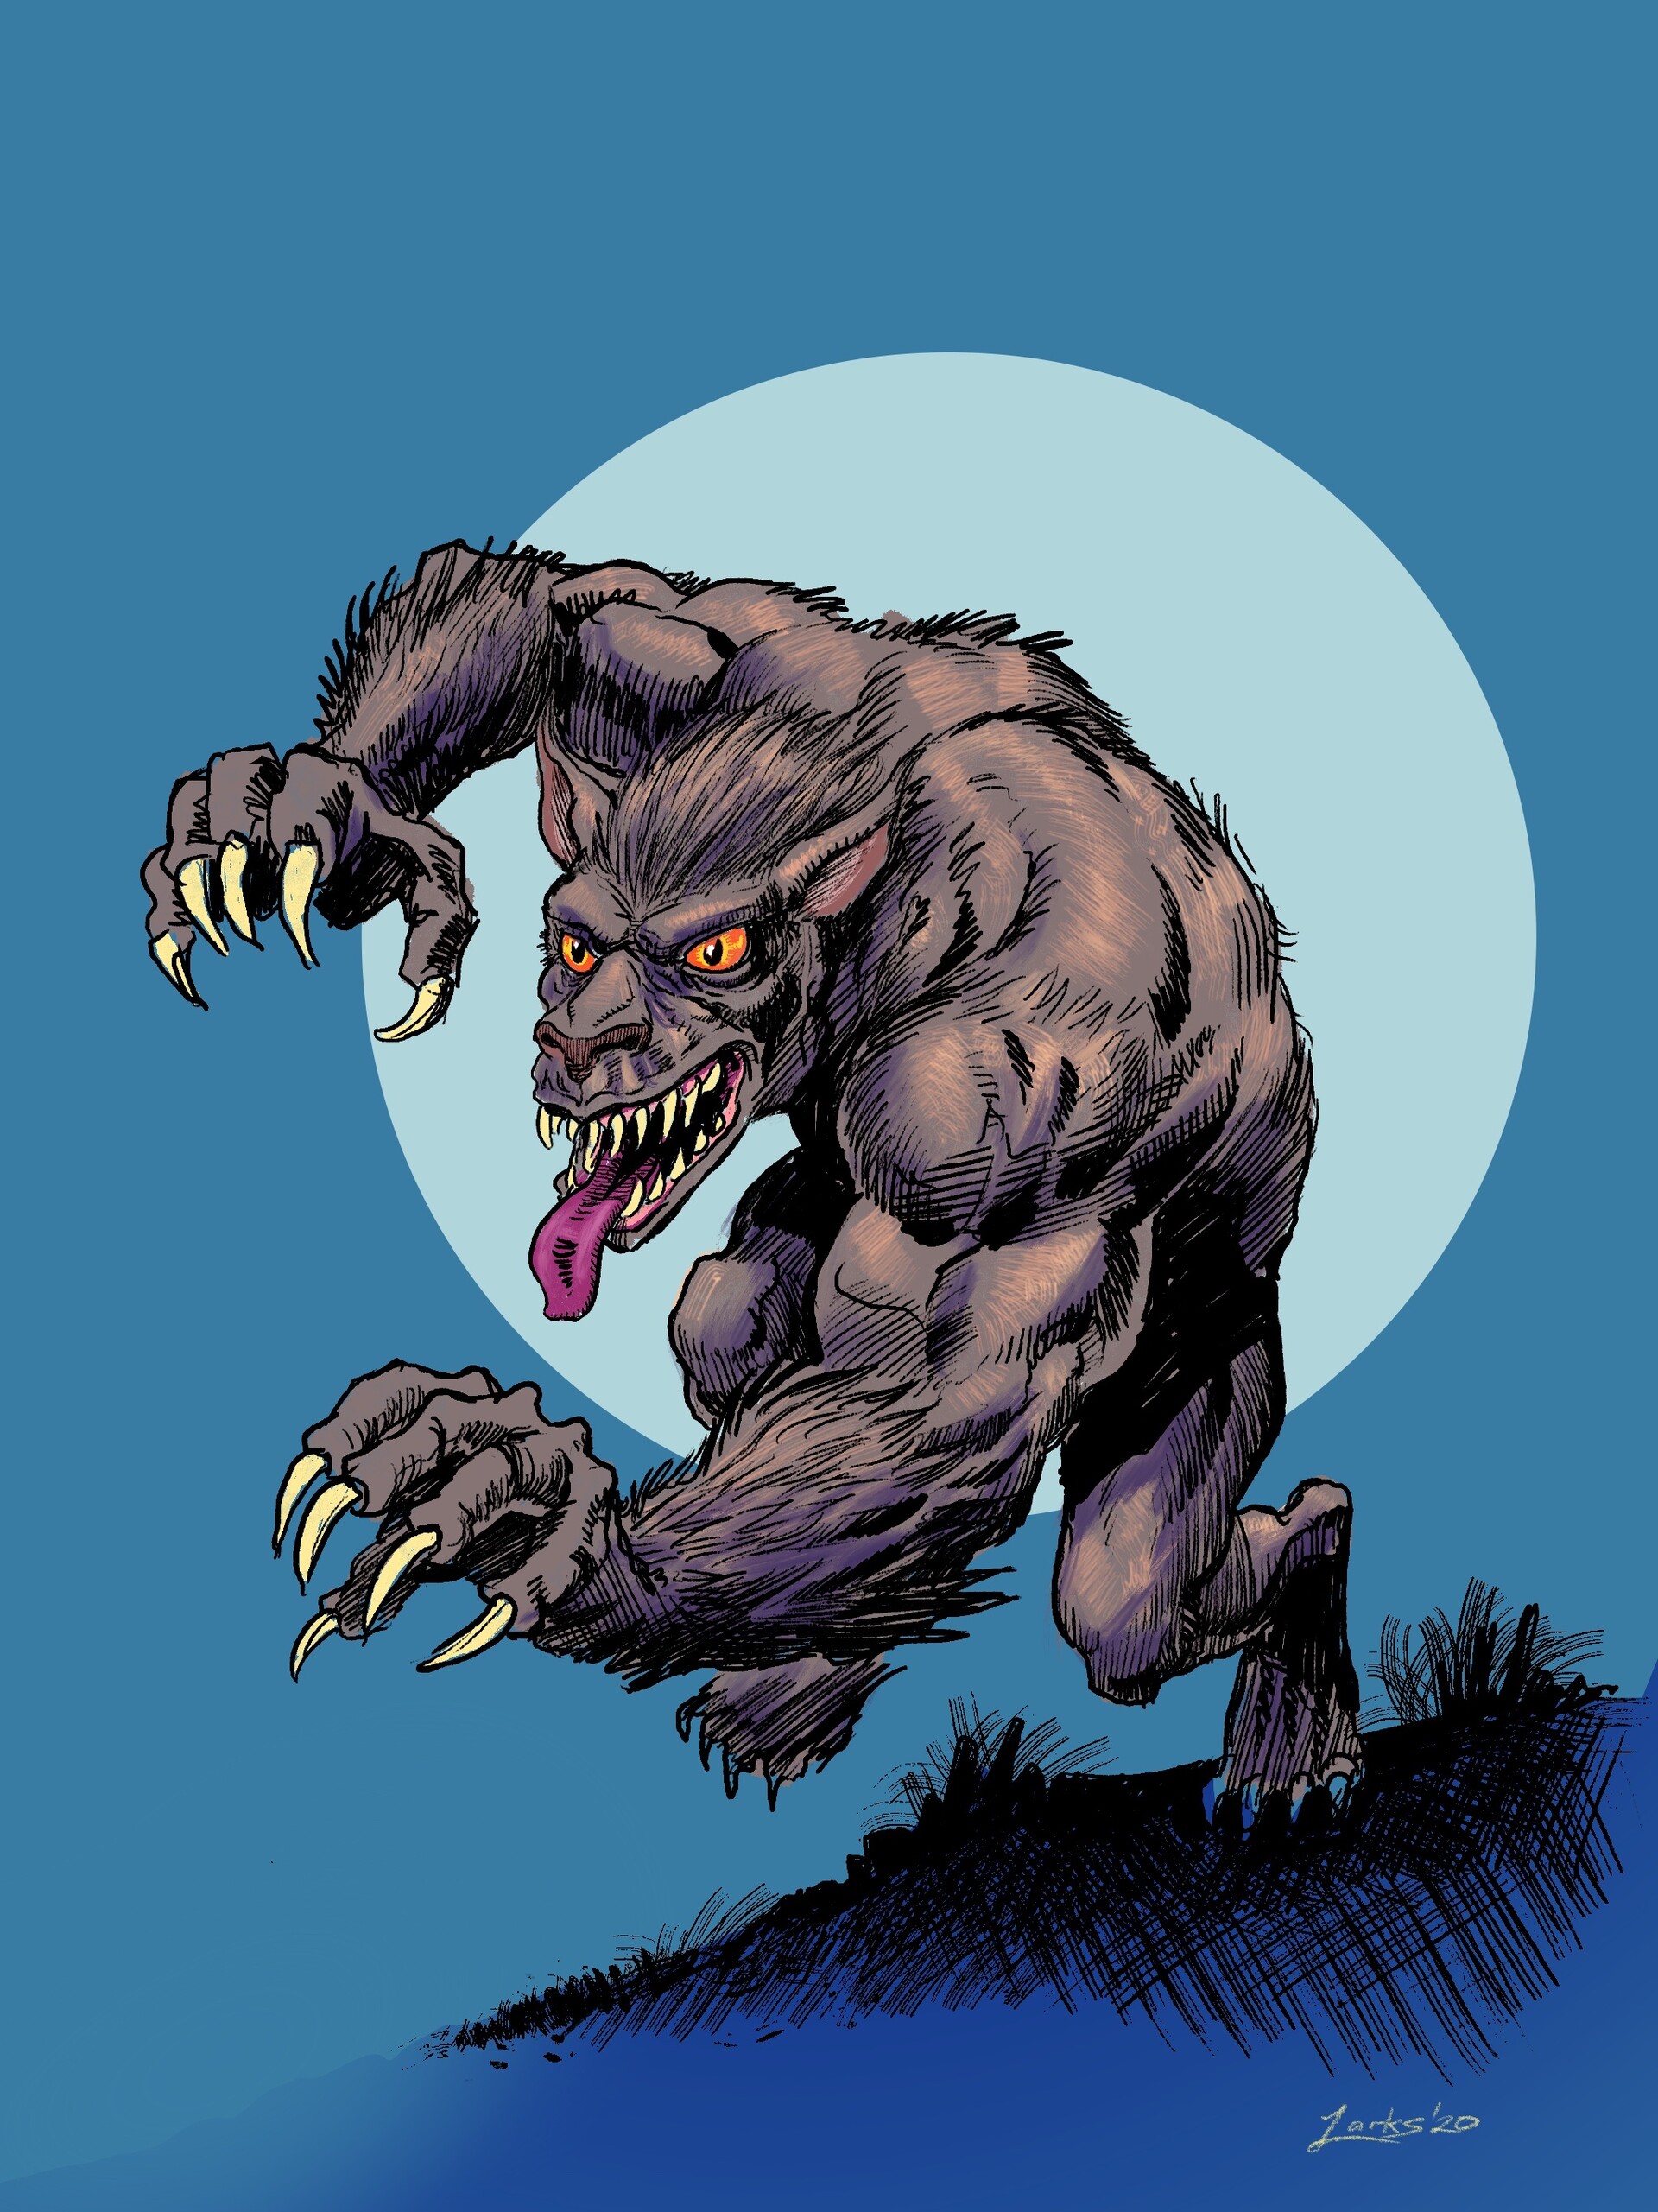 ArtStation - Werewolf by Night